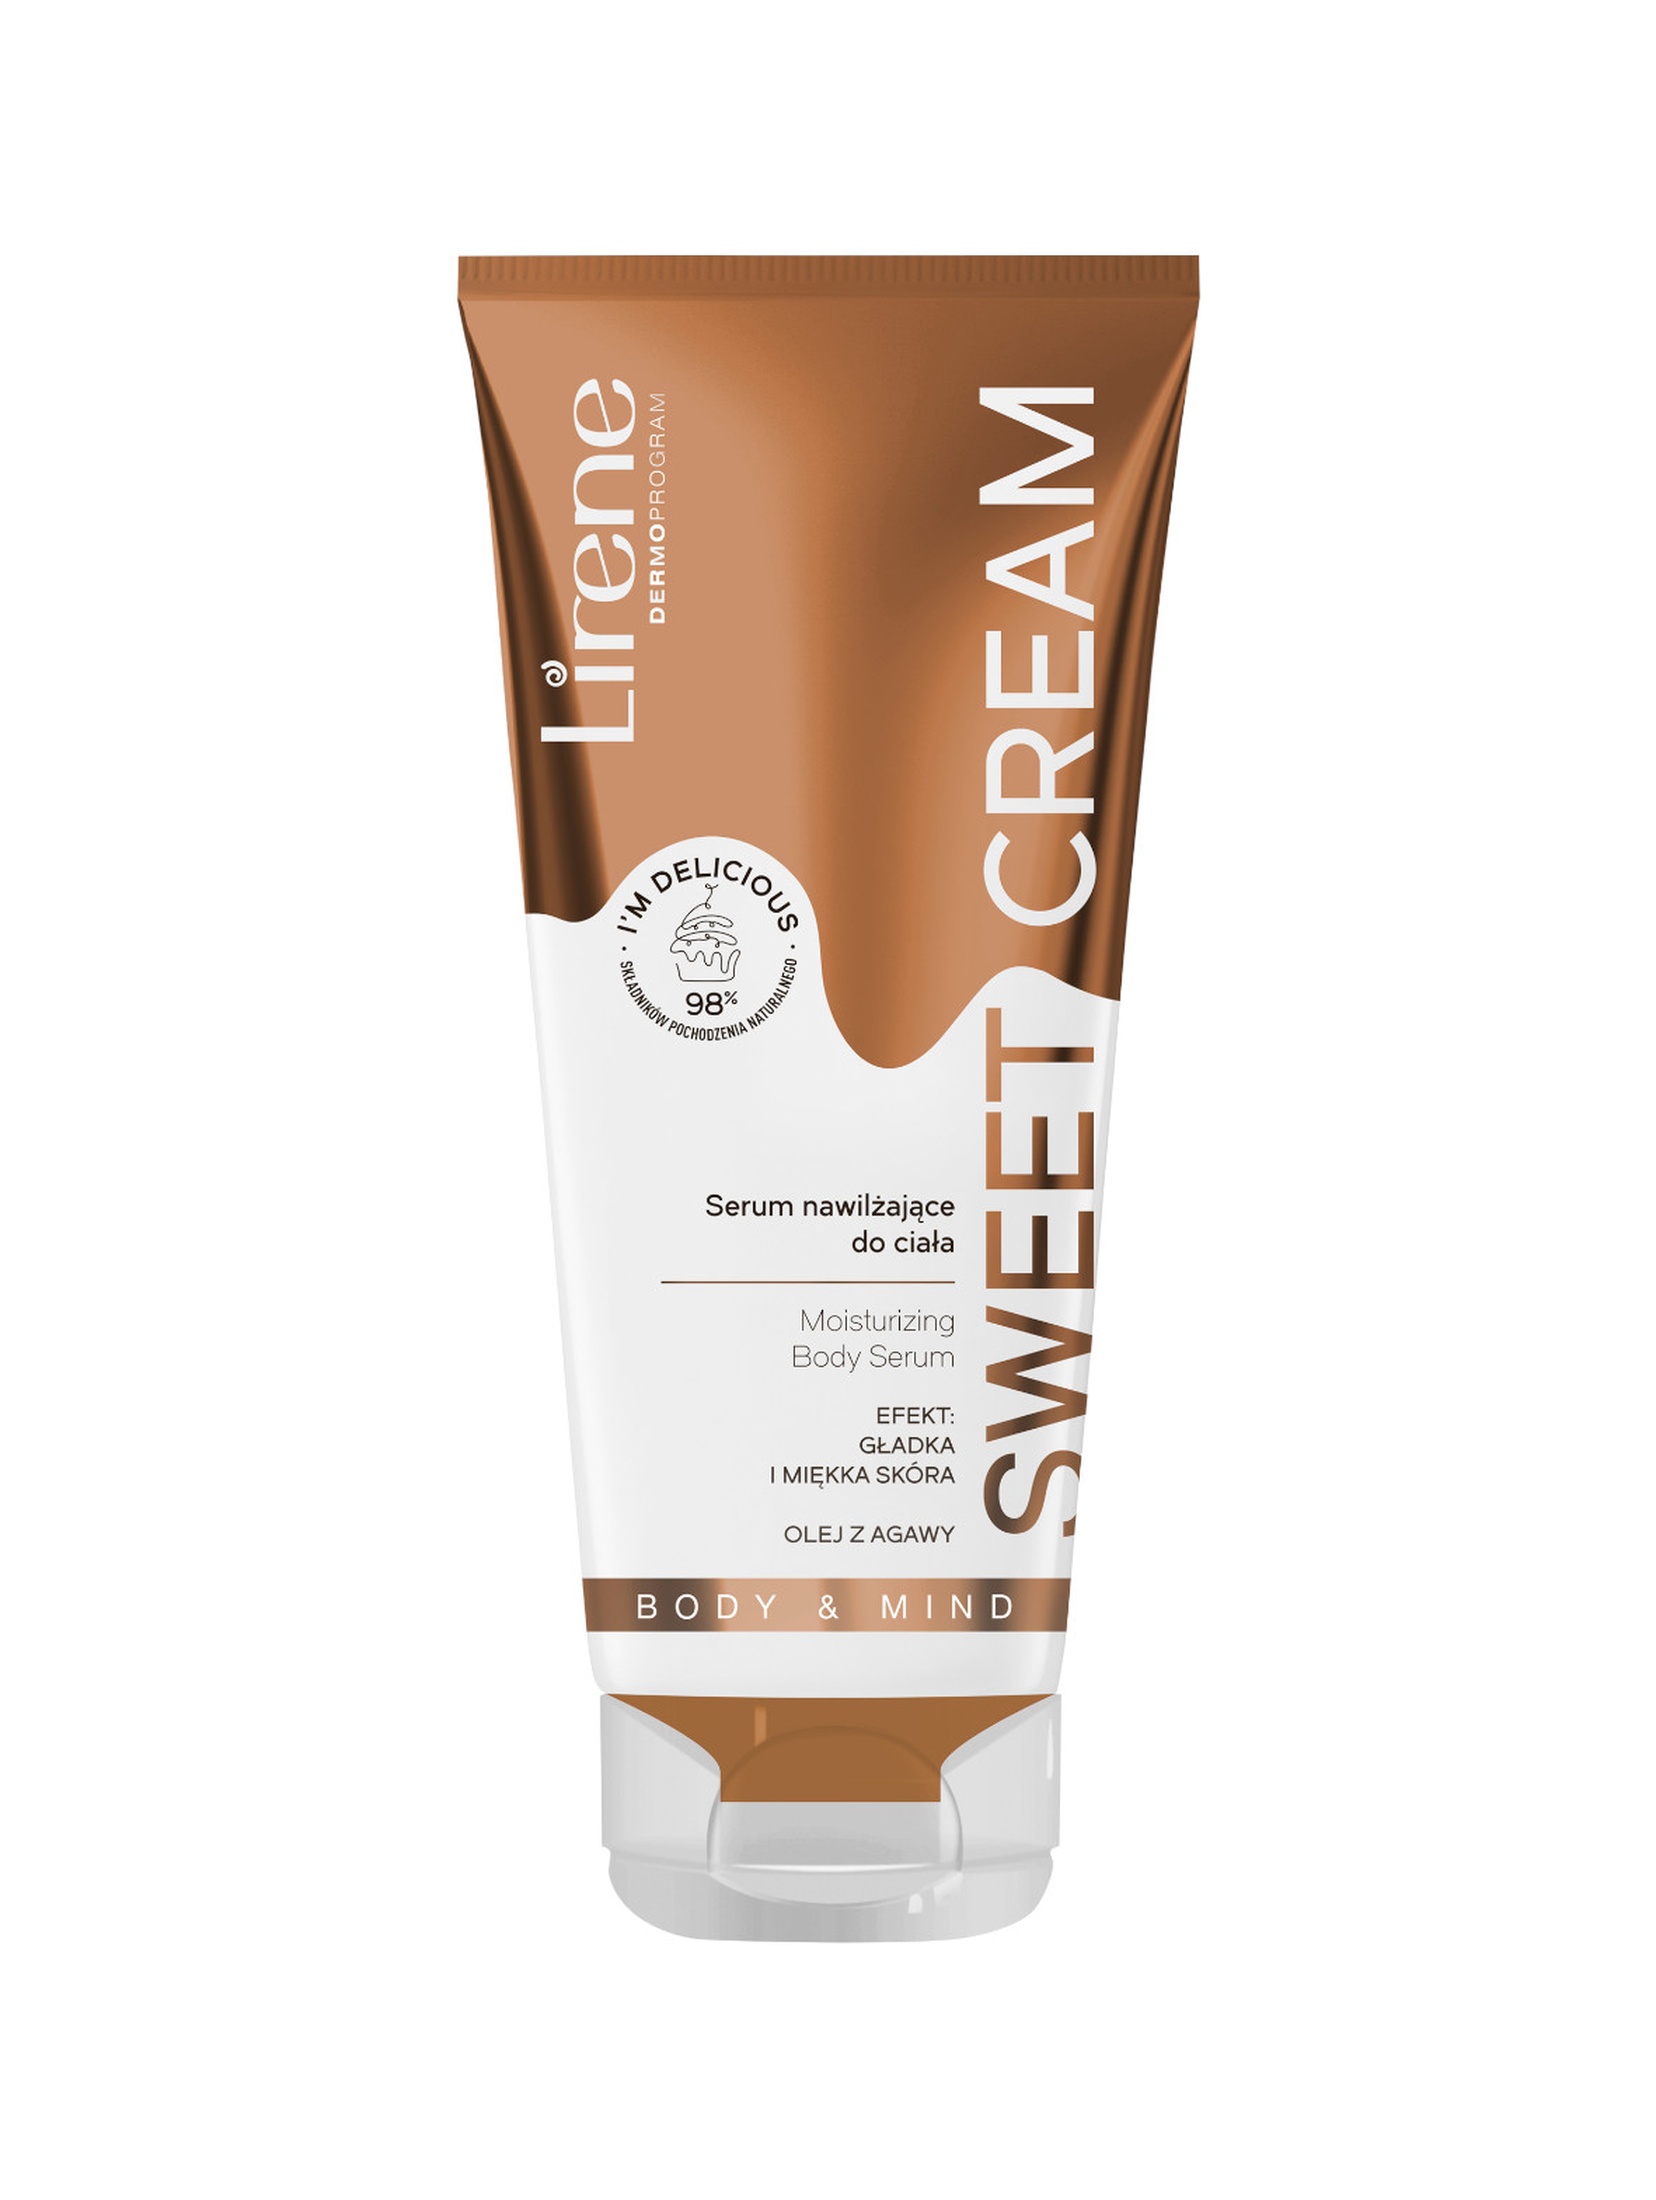 Lirene Sweet Cream Serum nawilżające do ciała 200 ml